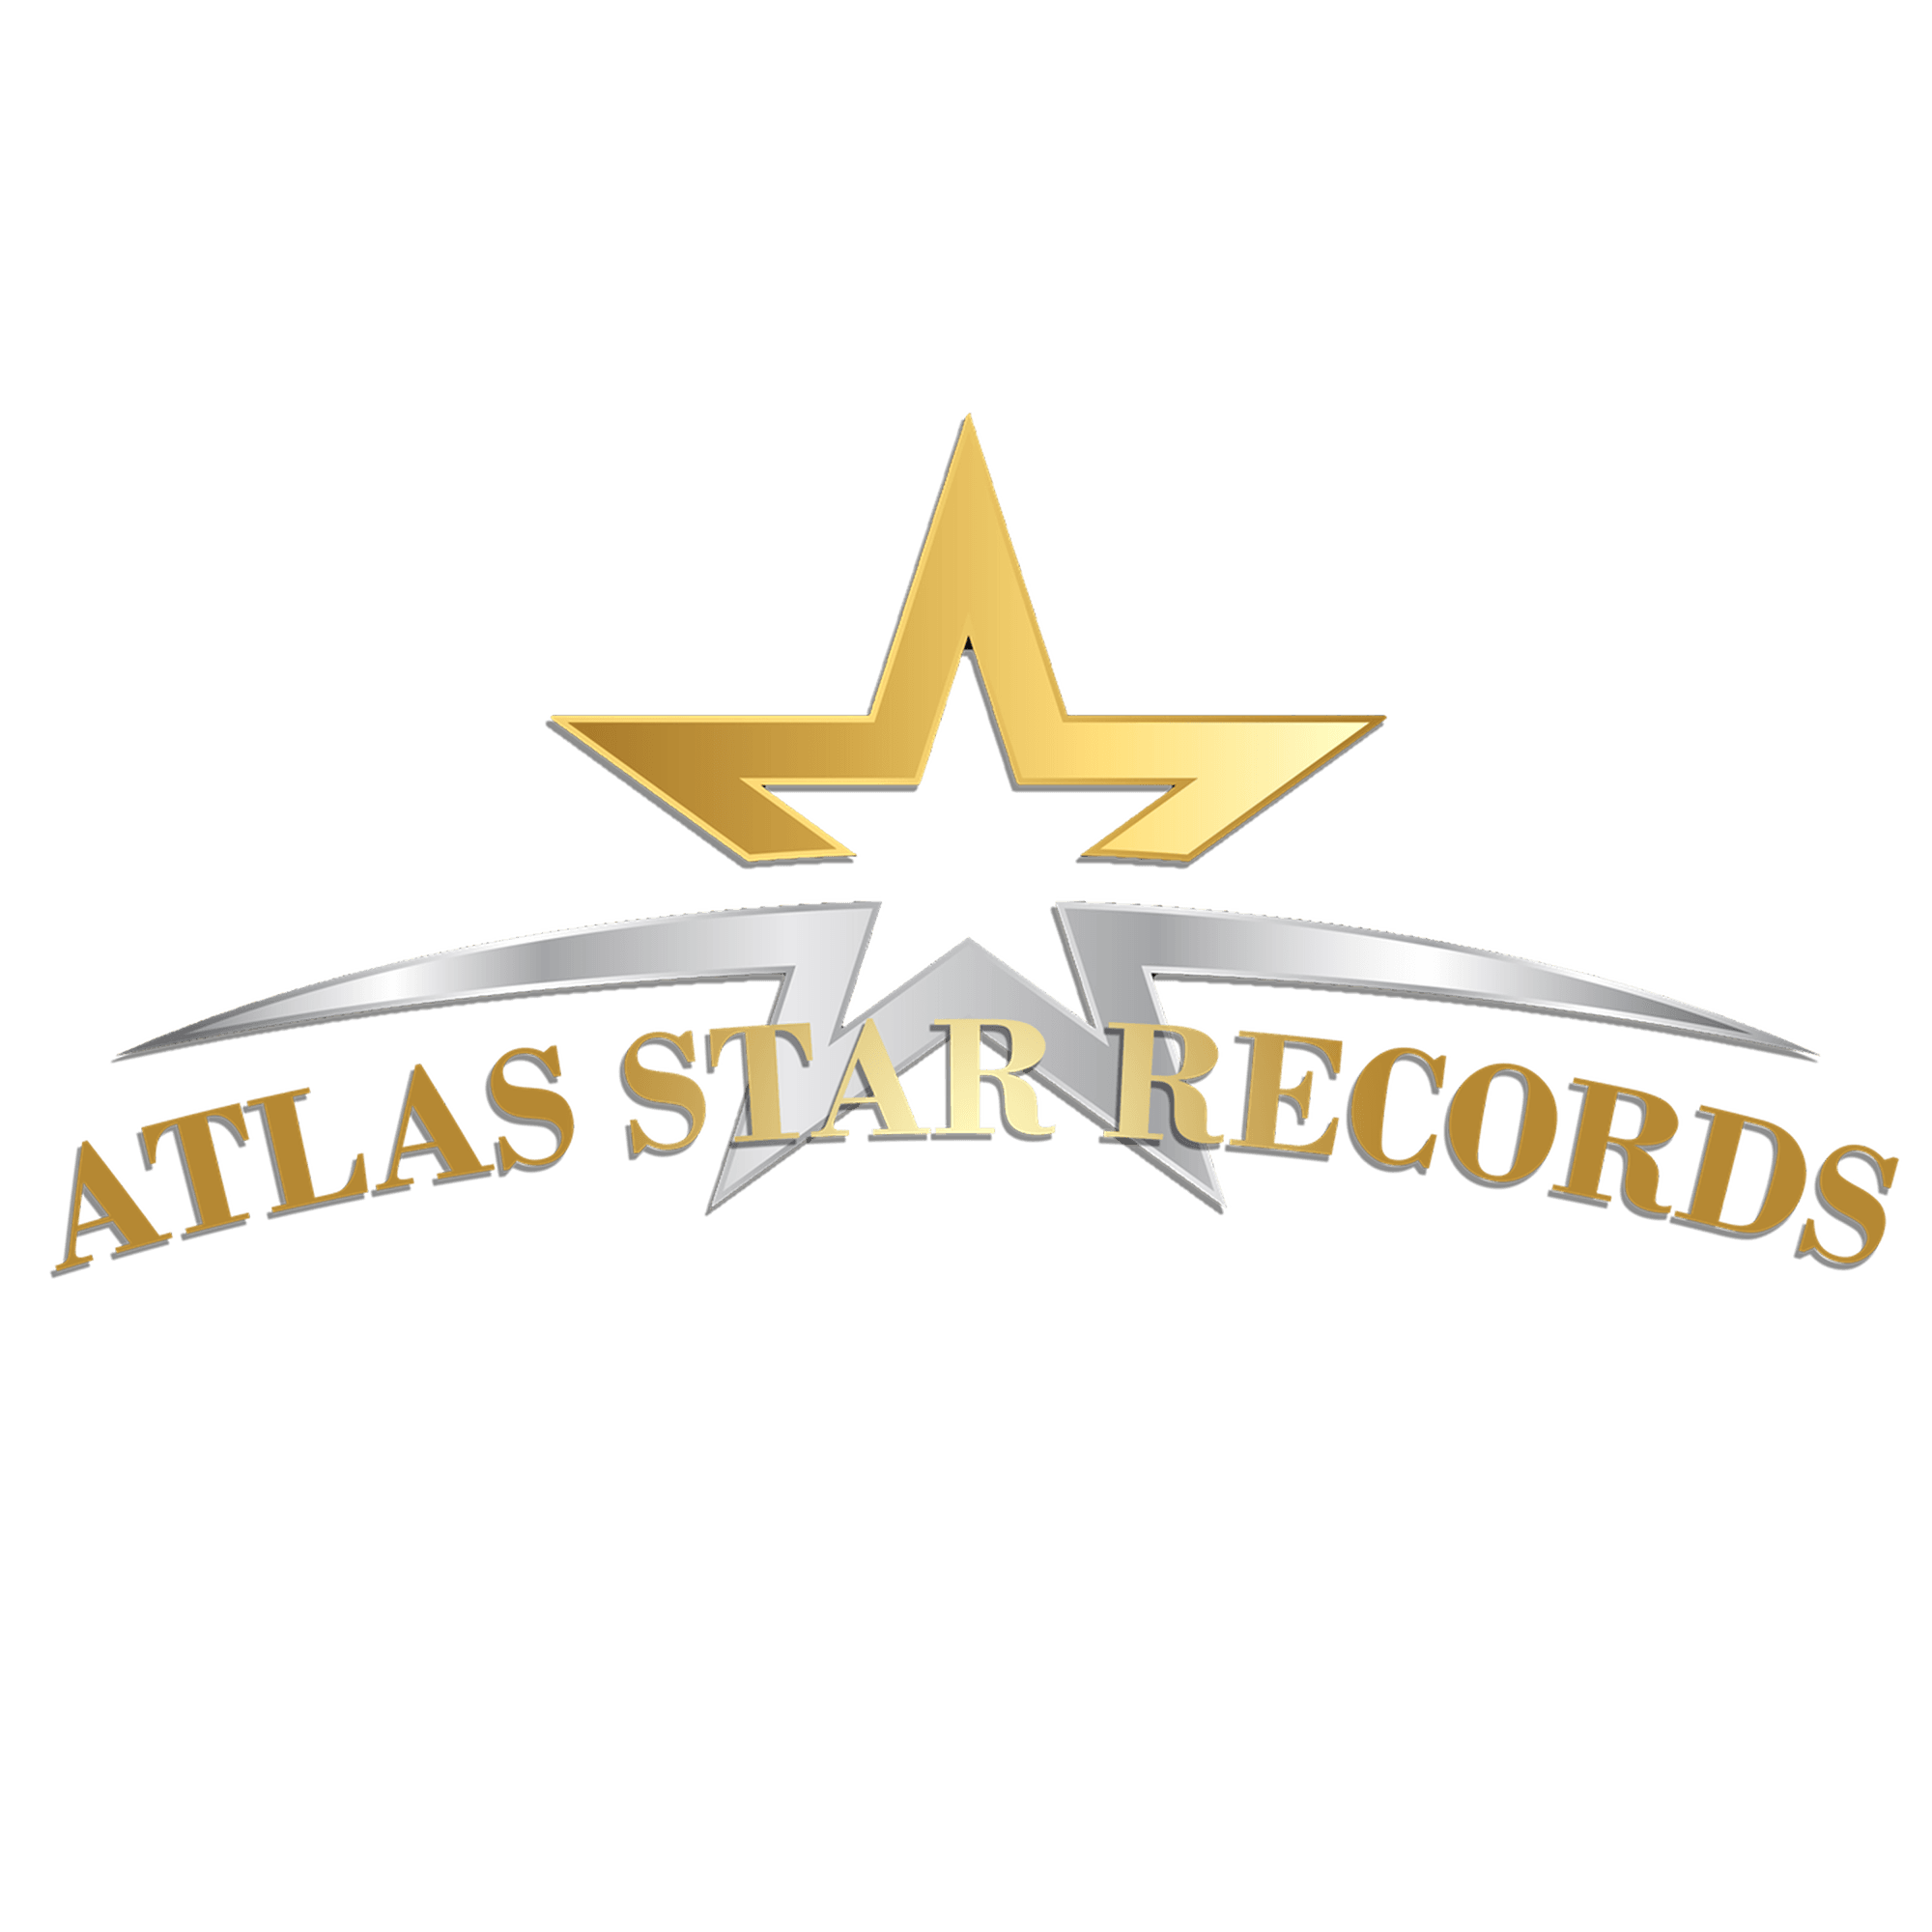 Atlas-Star-Records